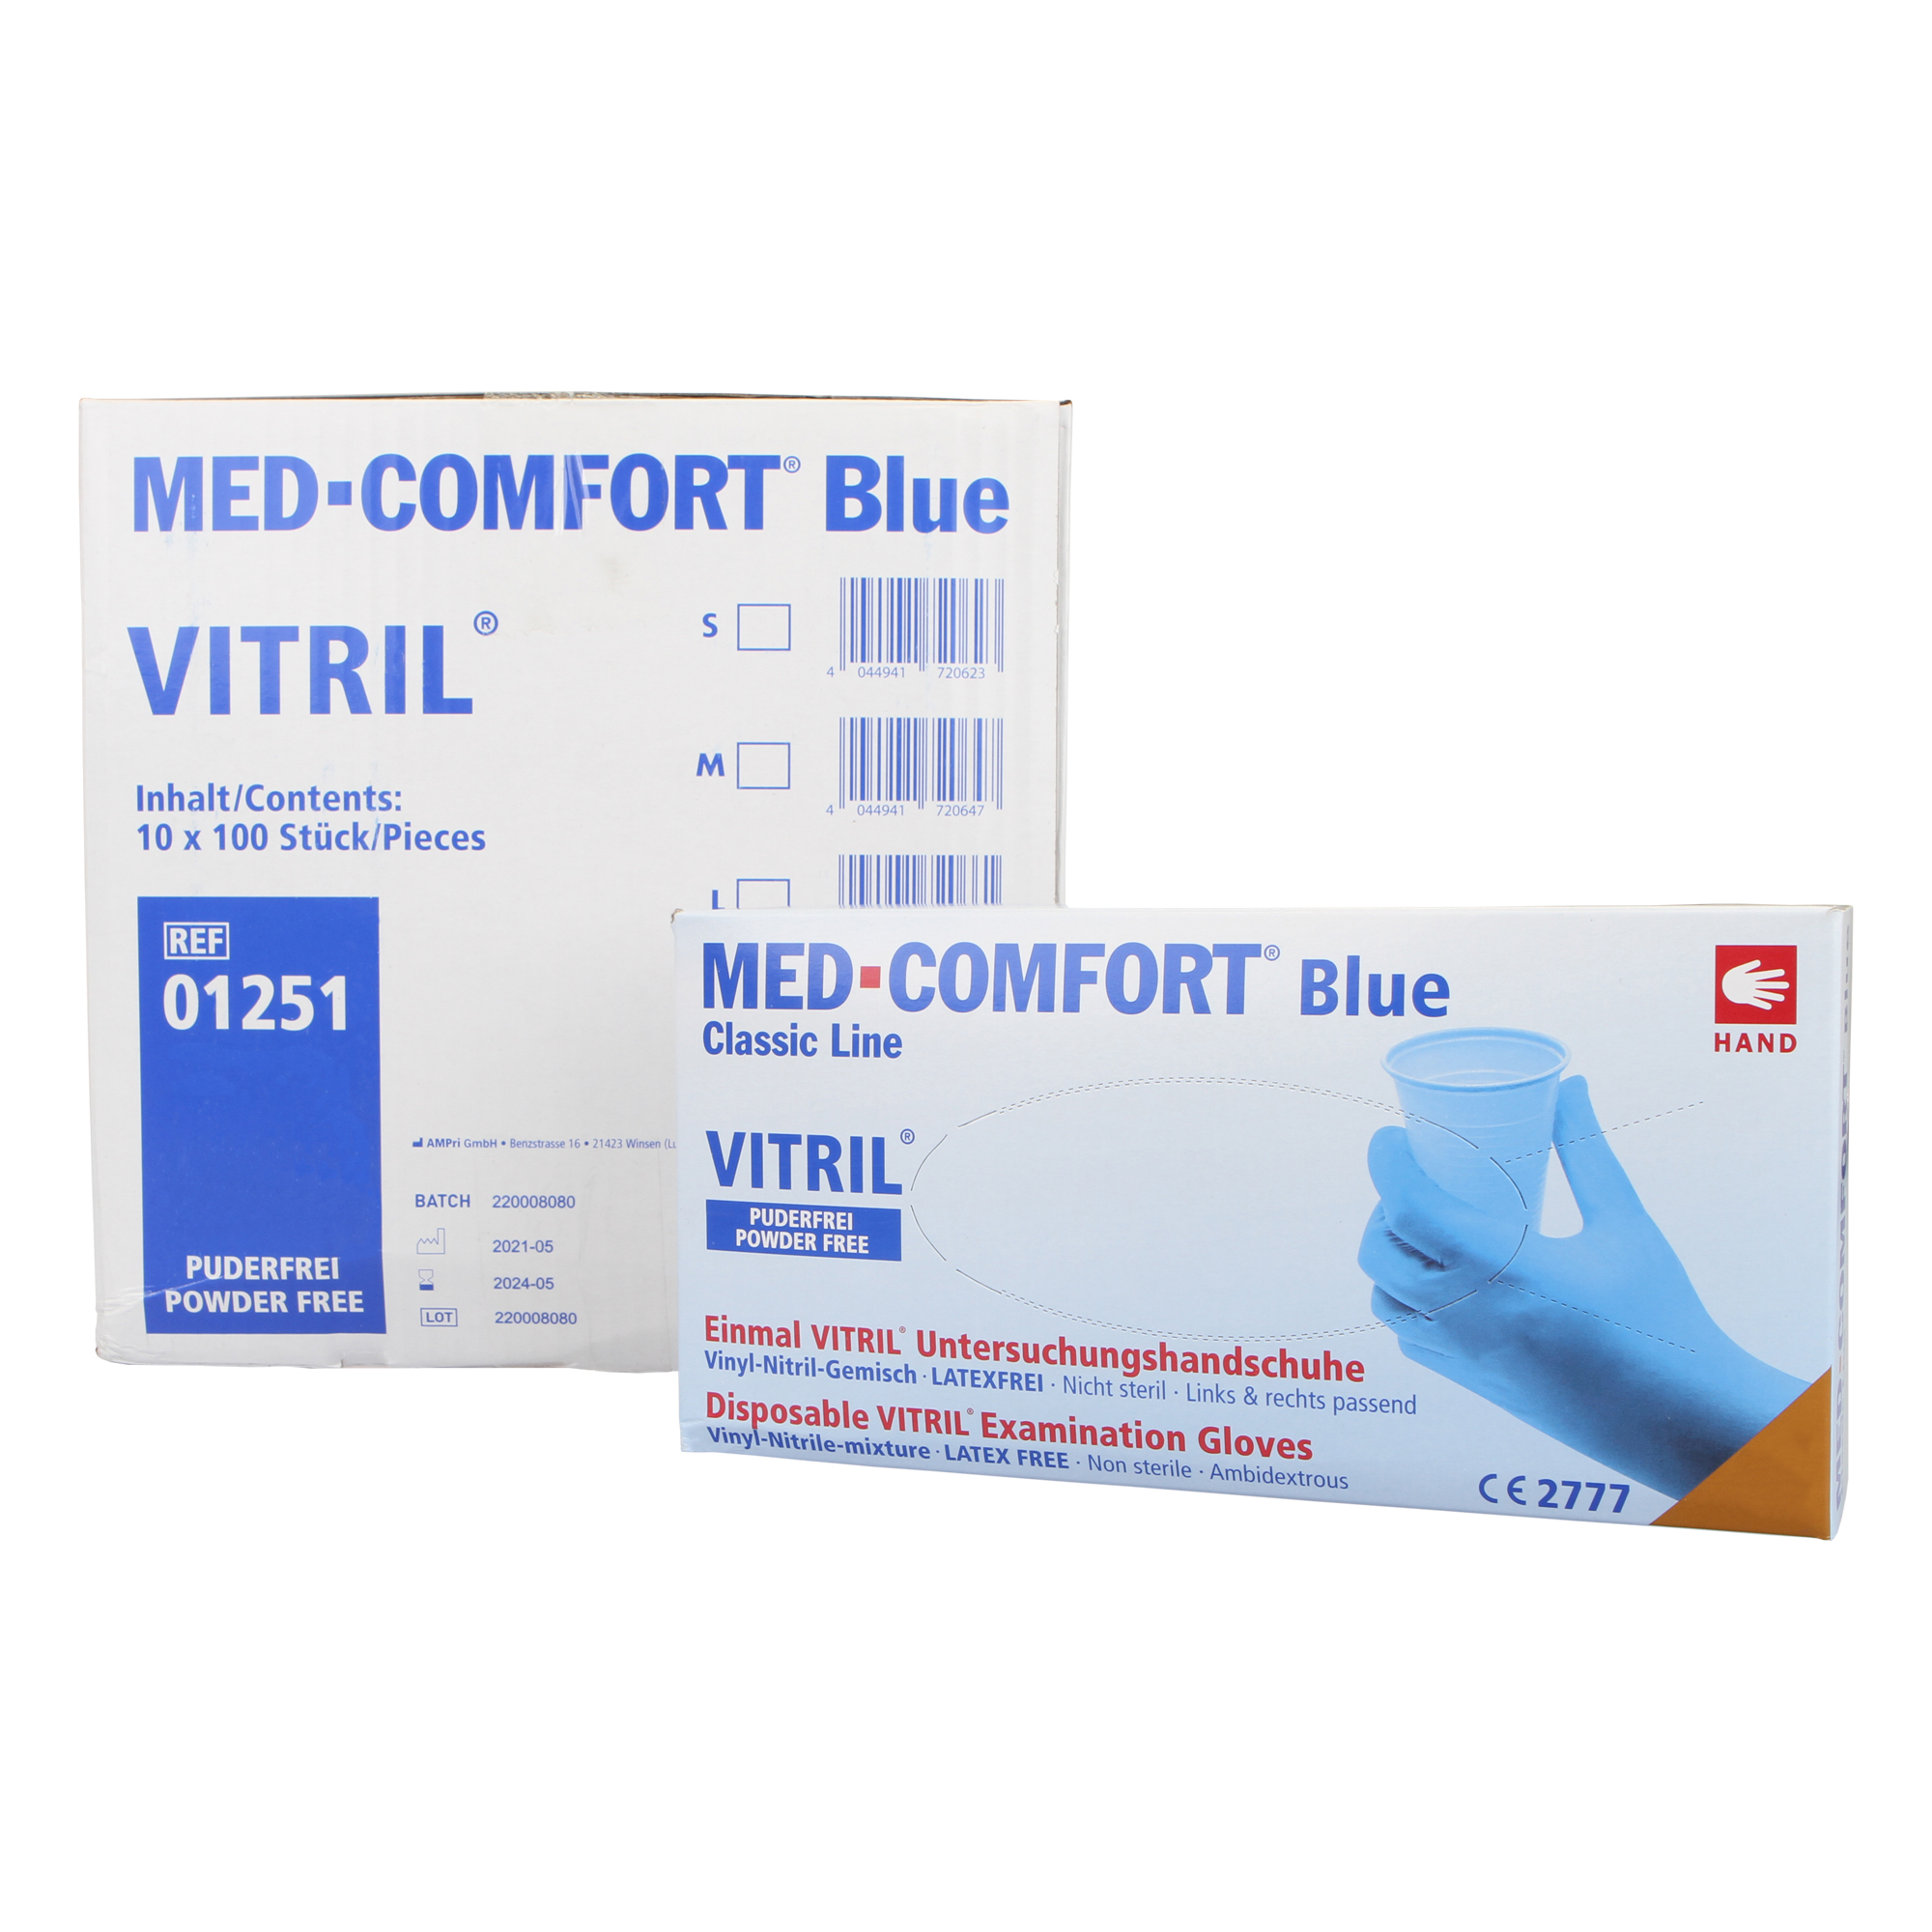 10 x MED-COMFORT Vitril Blau Einmalhandschuhe Vinyl-Nitril Untersuchungshandschuhe